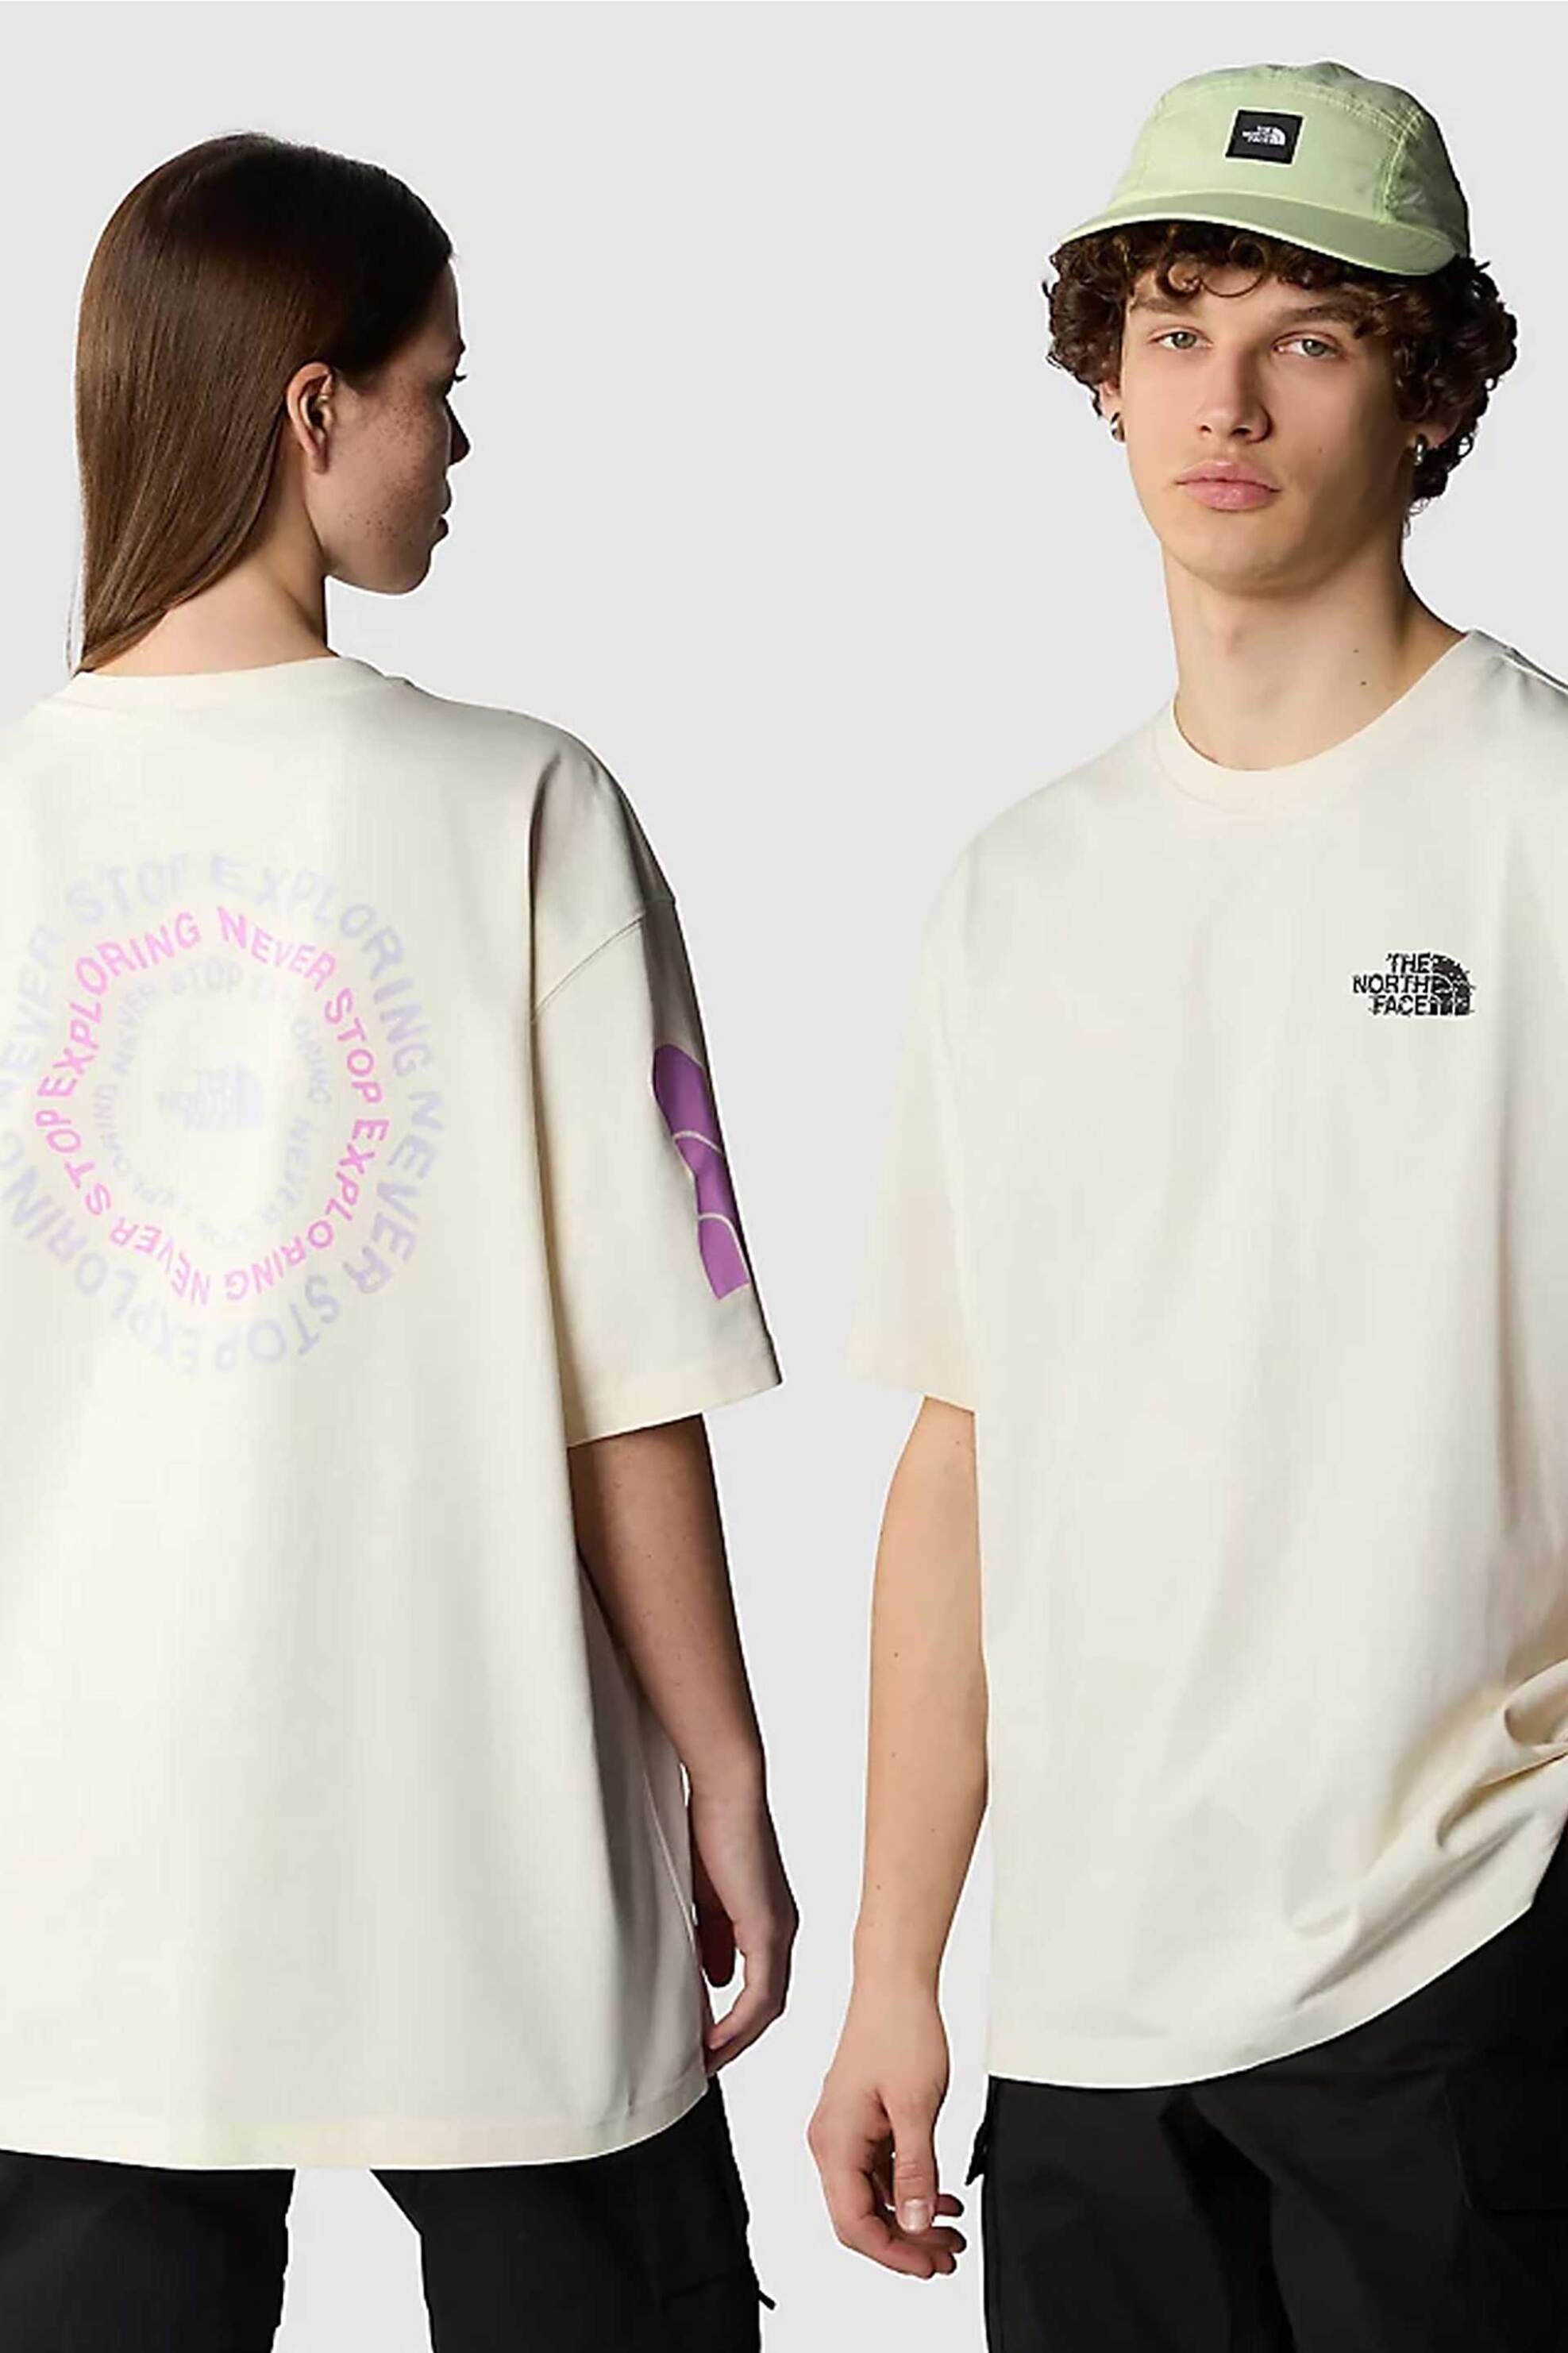 Ανδρική Μόδα > Ανδρικά Ρούχα > Ανδρικές Μπλούζες > Ανδρικά T-Shirts The North Face unisex T-shirt βαμβακερό μονόχρωμο με contrast prints "NSE Graphic" - NF0A87F6QLI1 Κρέμ